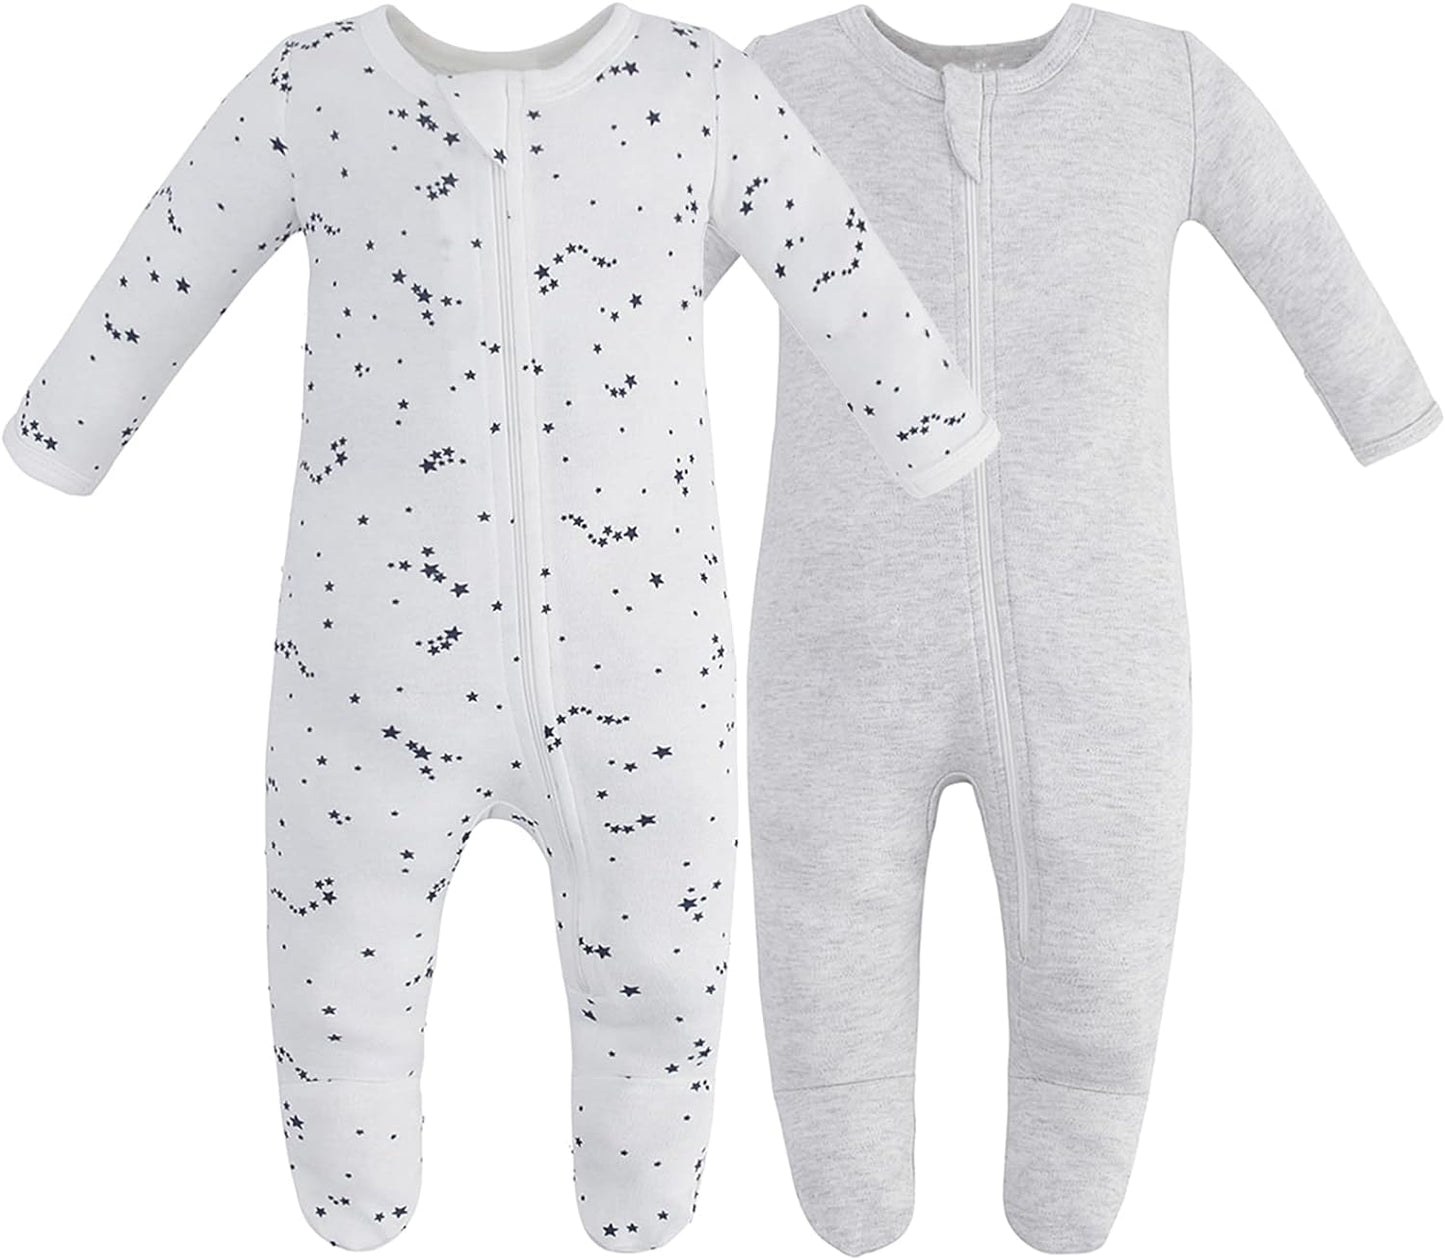 Owlivia Organic Cotton Baby Pajamas, Boys Girls Zip Front Sleep 'N Play, Footed Sleeper, Long Sleeve